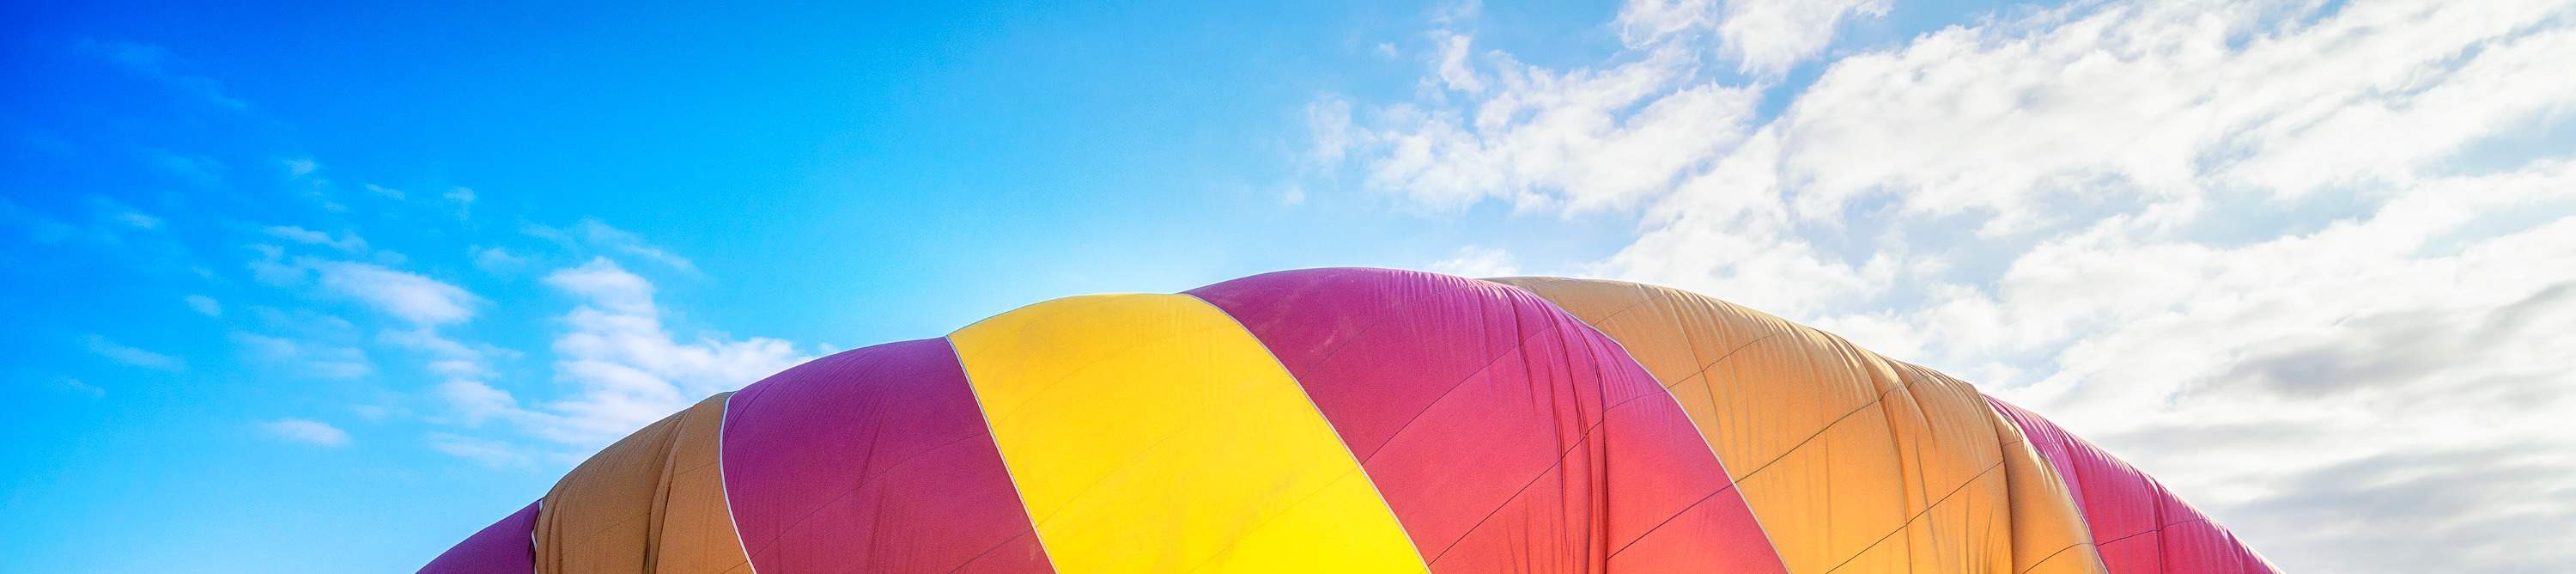 hot air ballooning camden